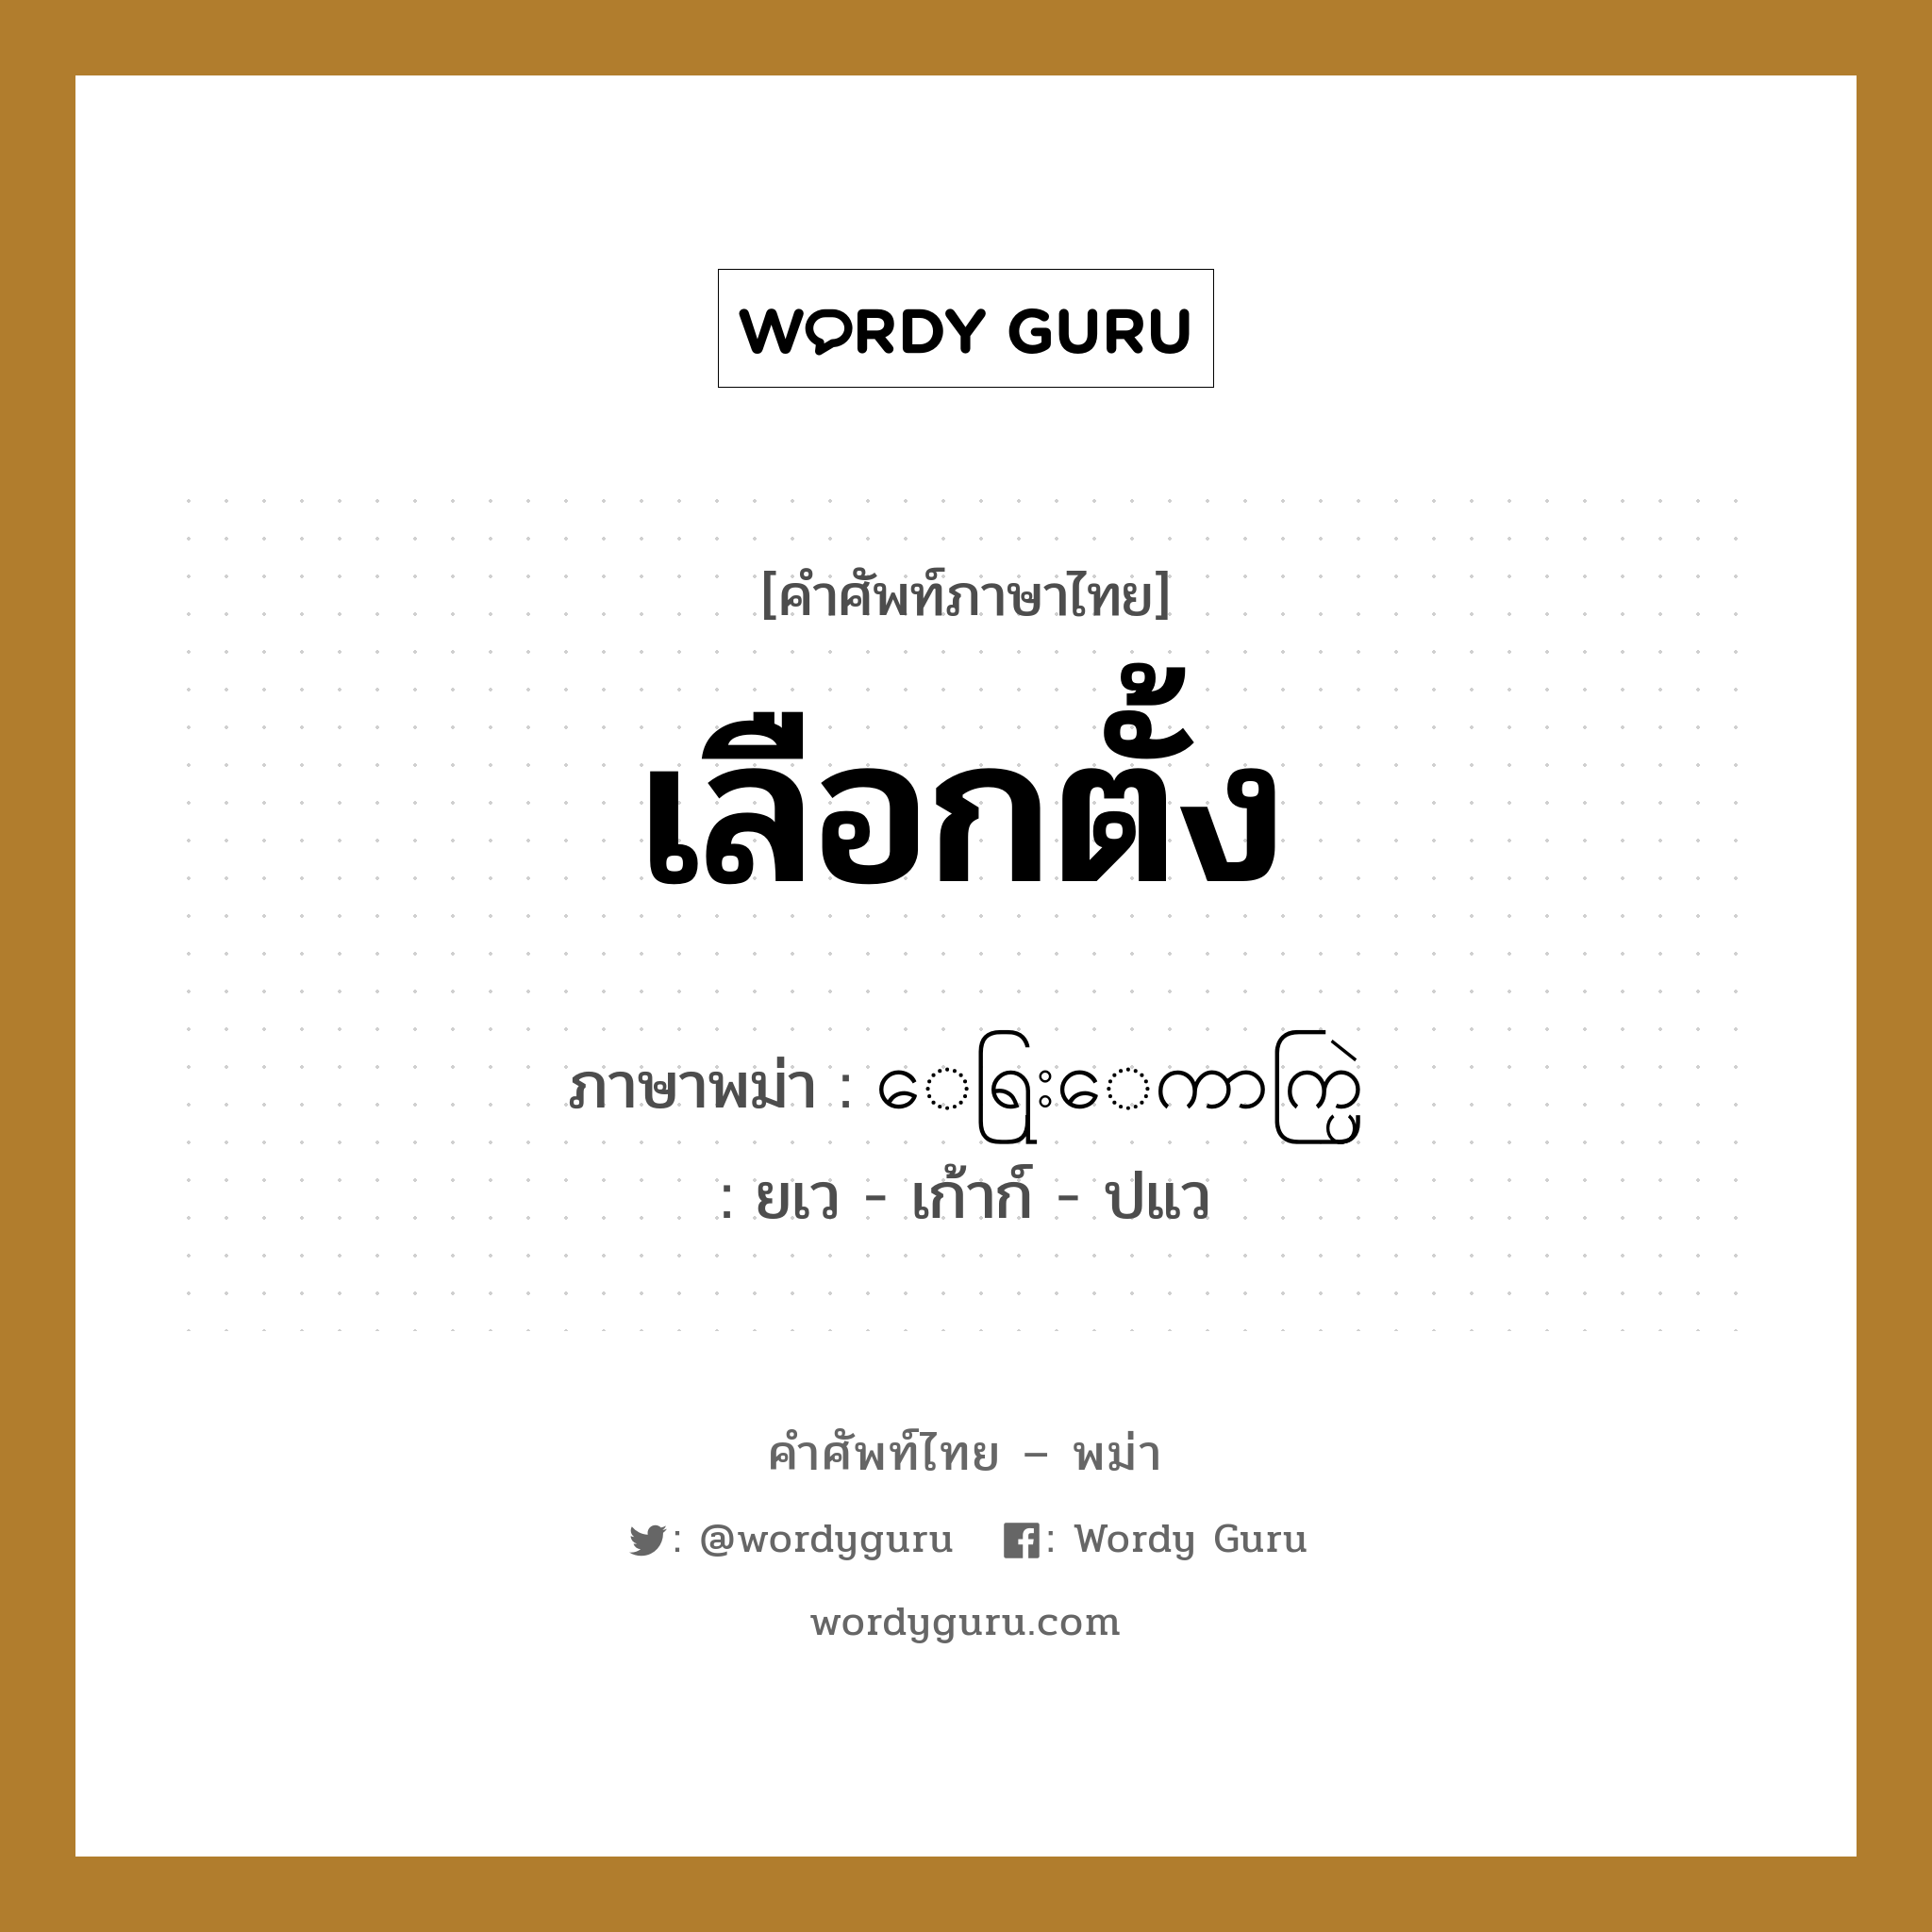 เลือกตั้ง ภาษาพม่าคืออะไร, คำศัพท์ภาษาไทย - พม่า เลือกตั้ง ภาษาพม่า ေရြးေကာက္ပြဲ หมวด ทั่วไป ยเว - เก้าก์ - ปแว หมวด ทั่วไป